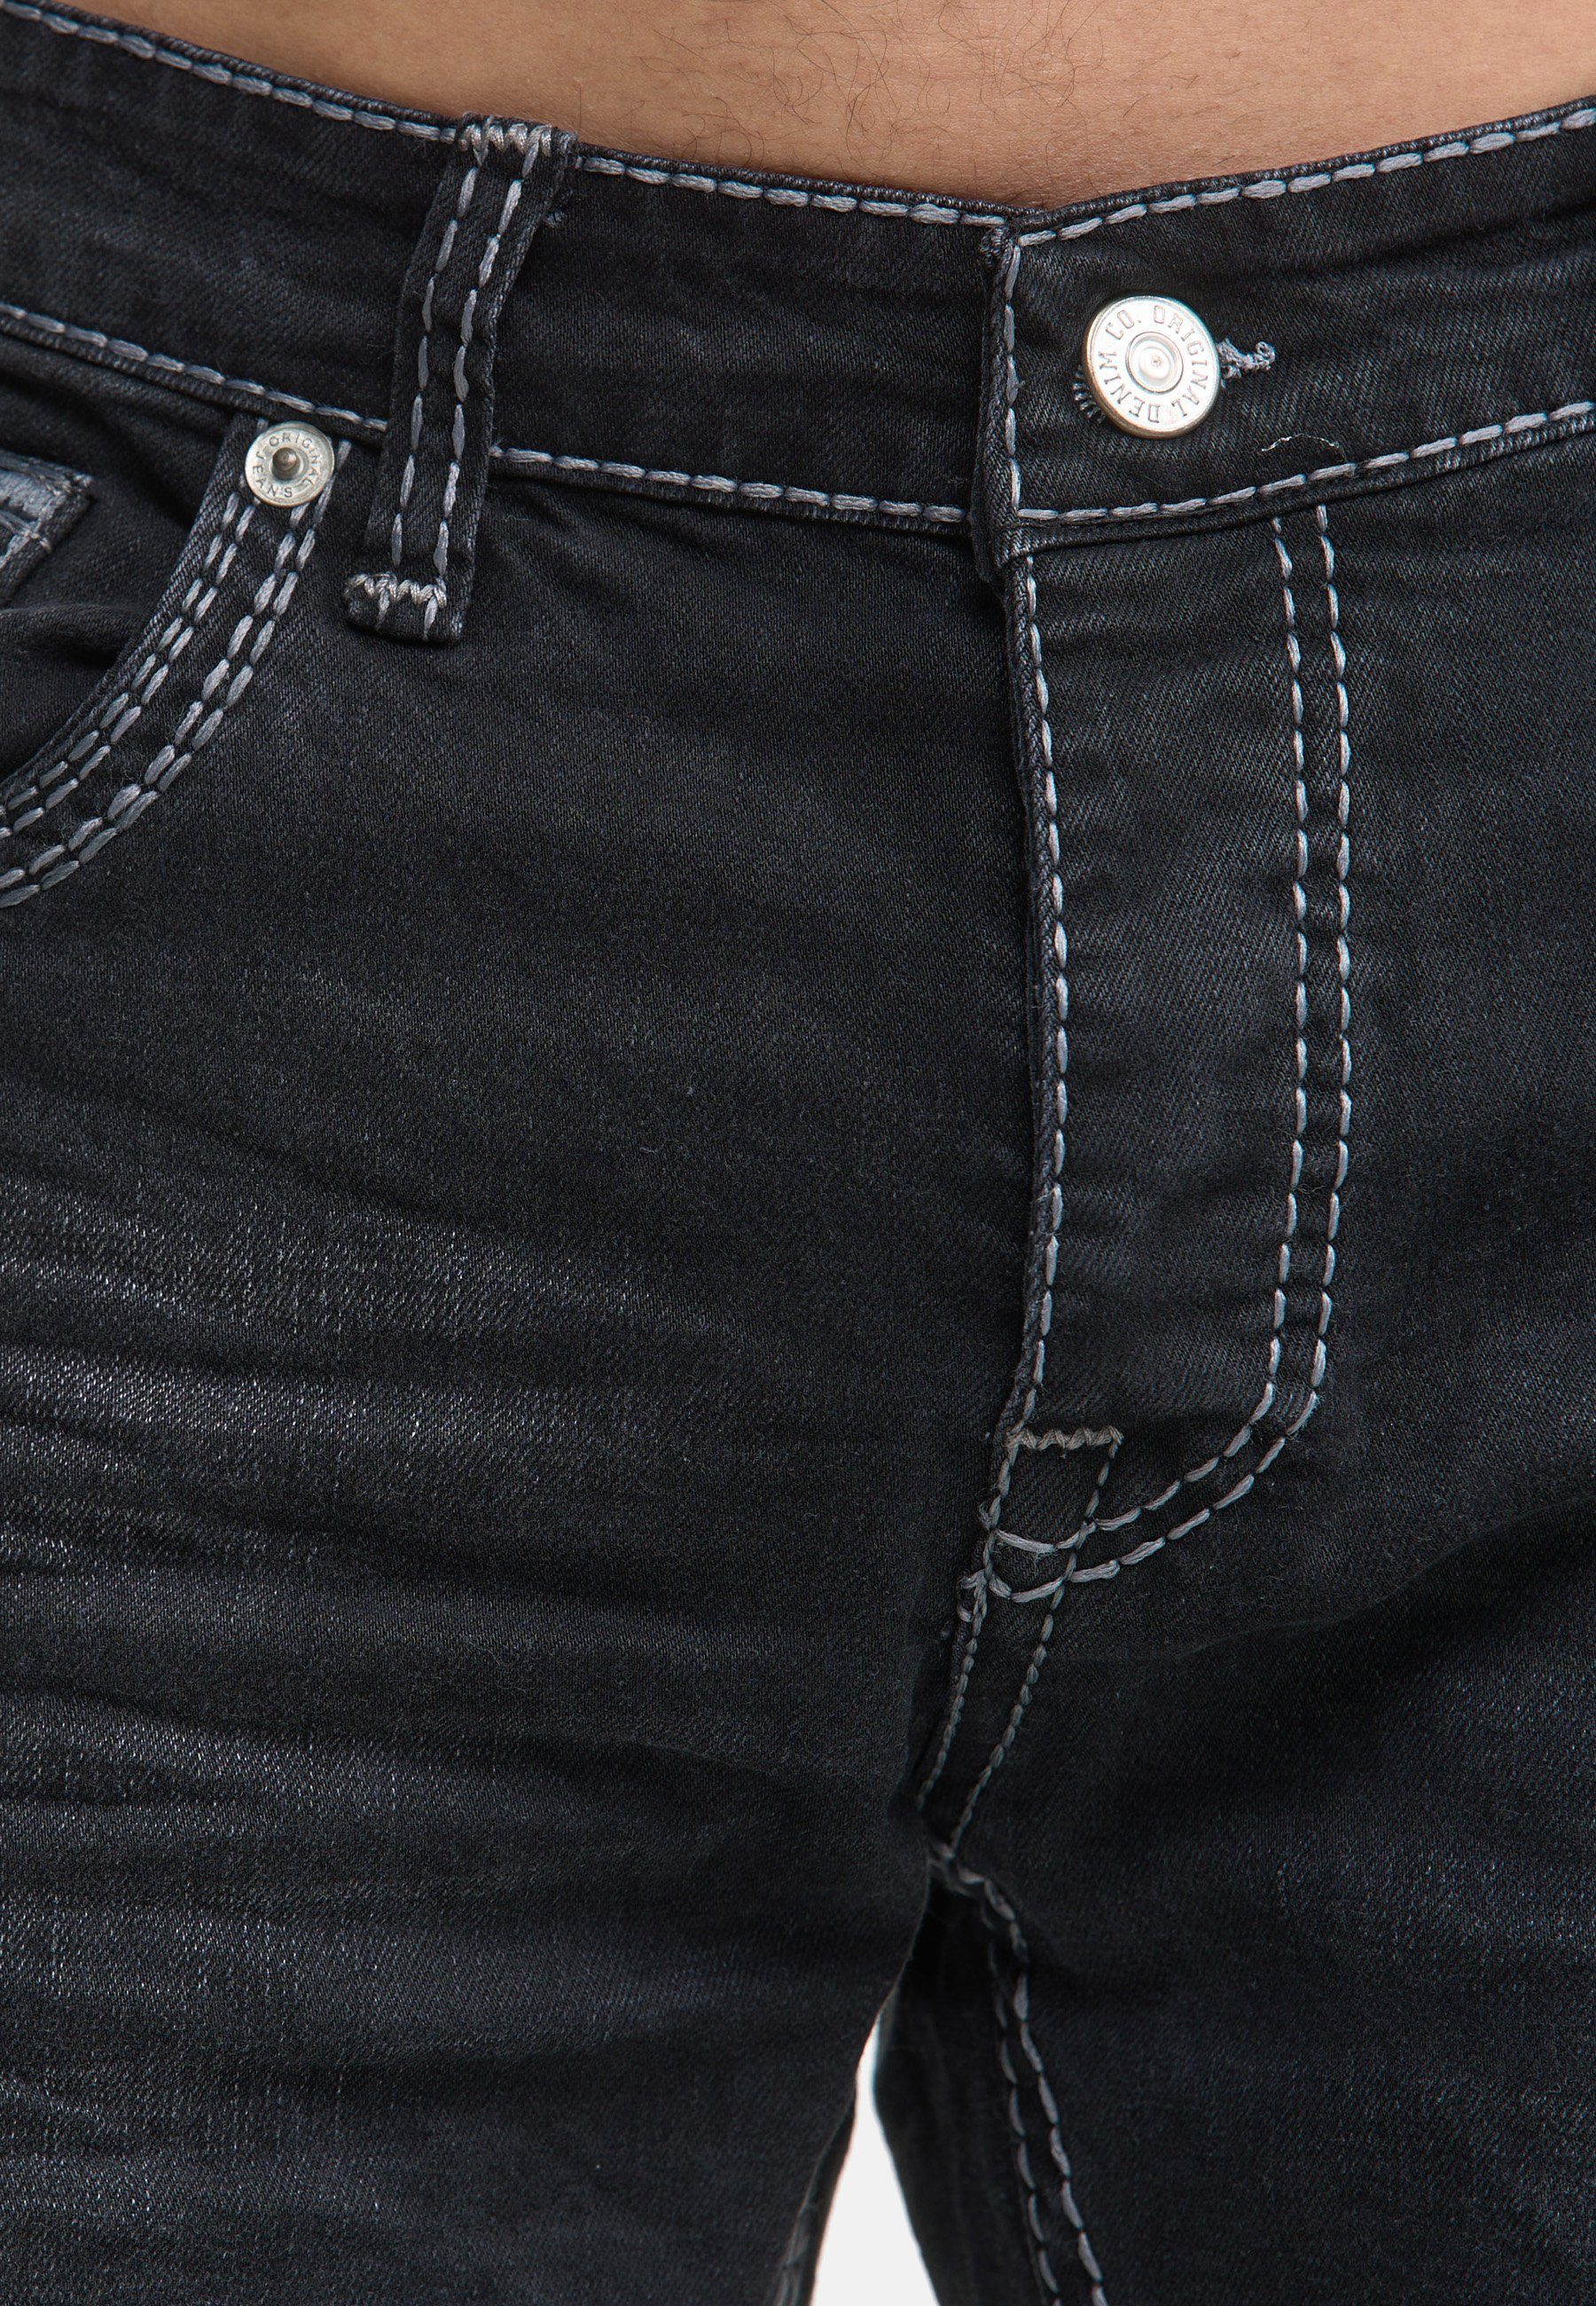 Männer Pocket Code47 Fit Regular Code47 Hose Regular-fit-Jeans light Bootcut Jeans Herren 902 black Denim Five